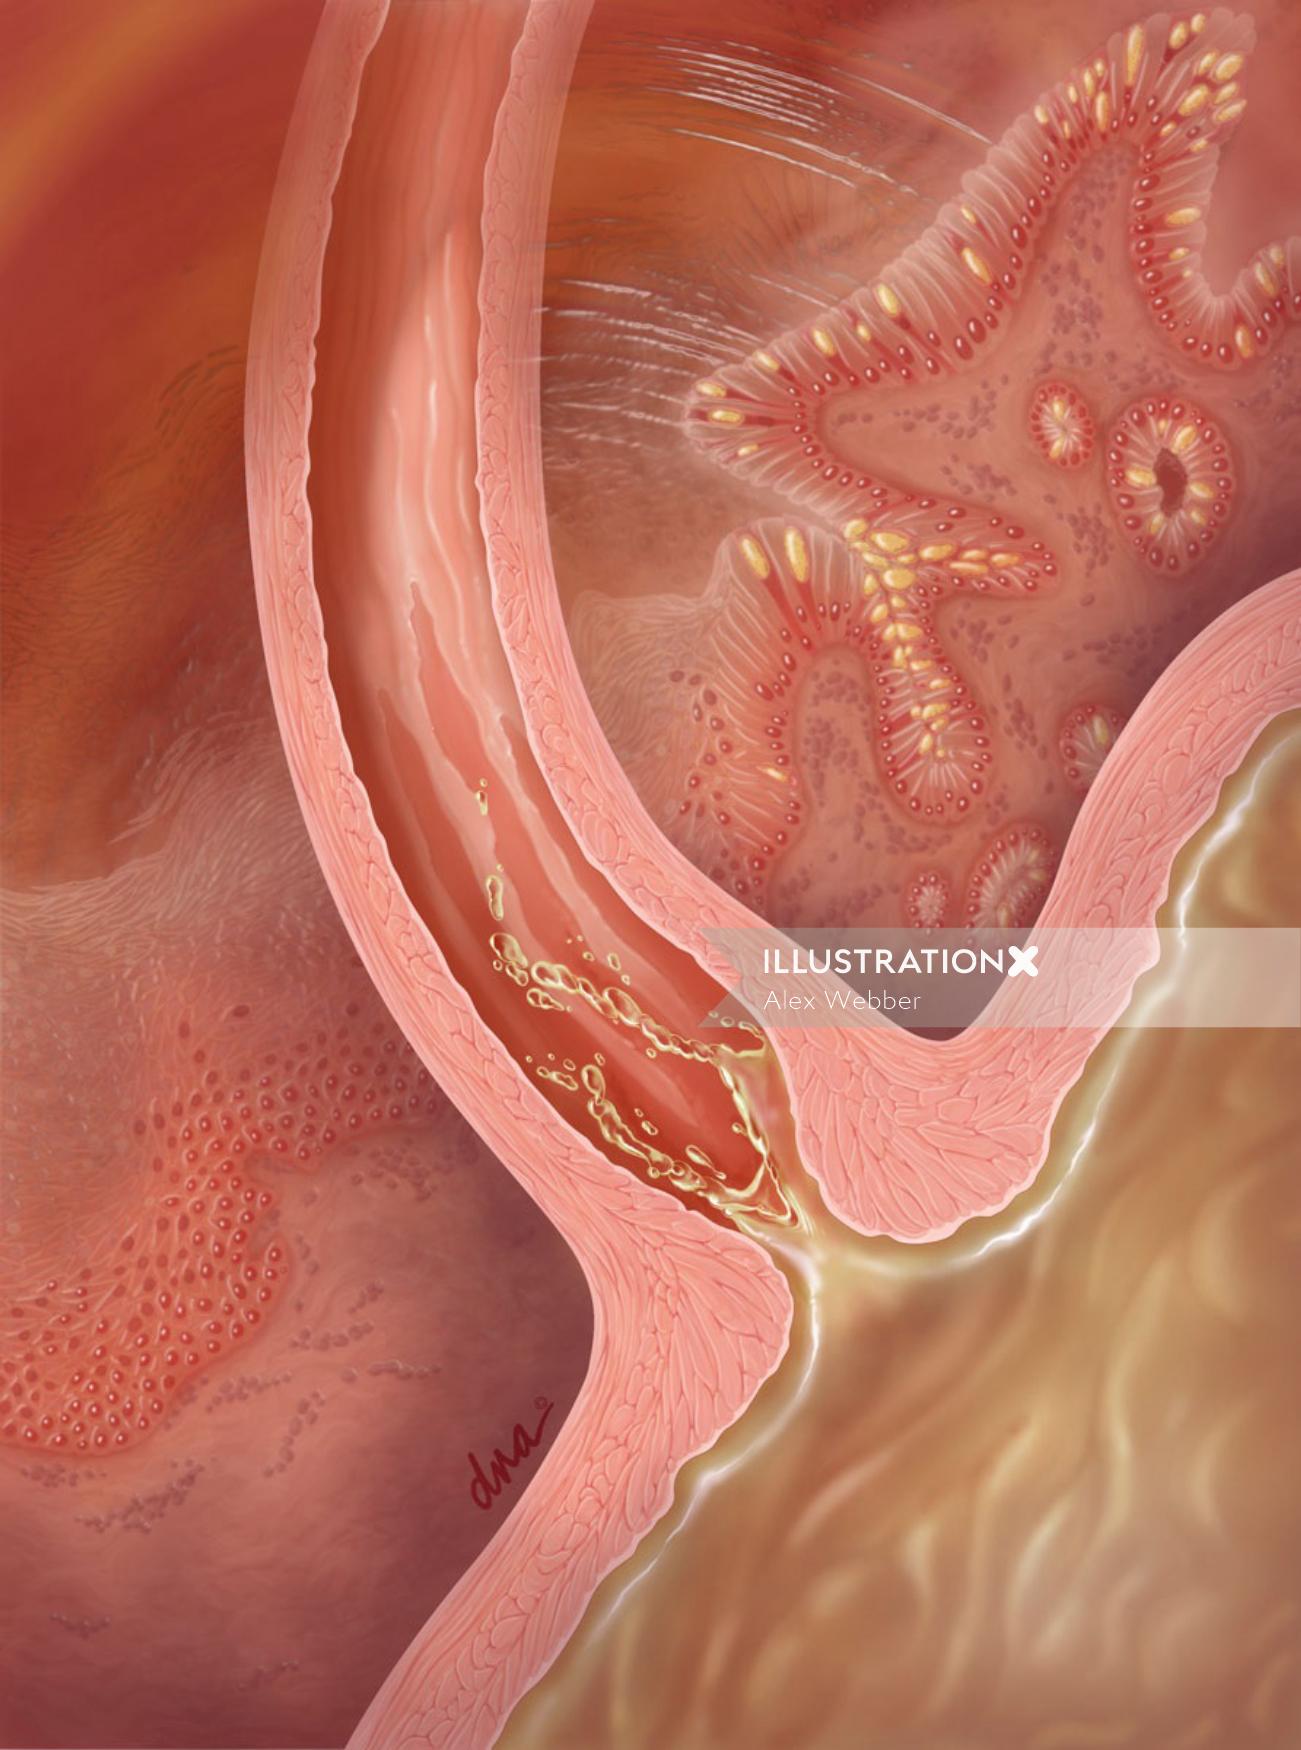 Illustration de reflux gastro-œsophagien par AlexBaker